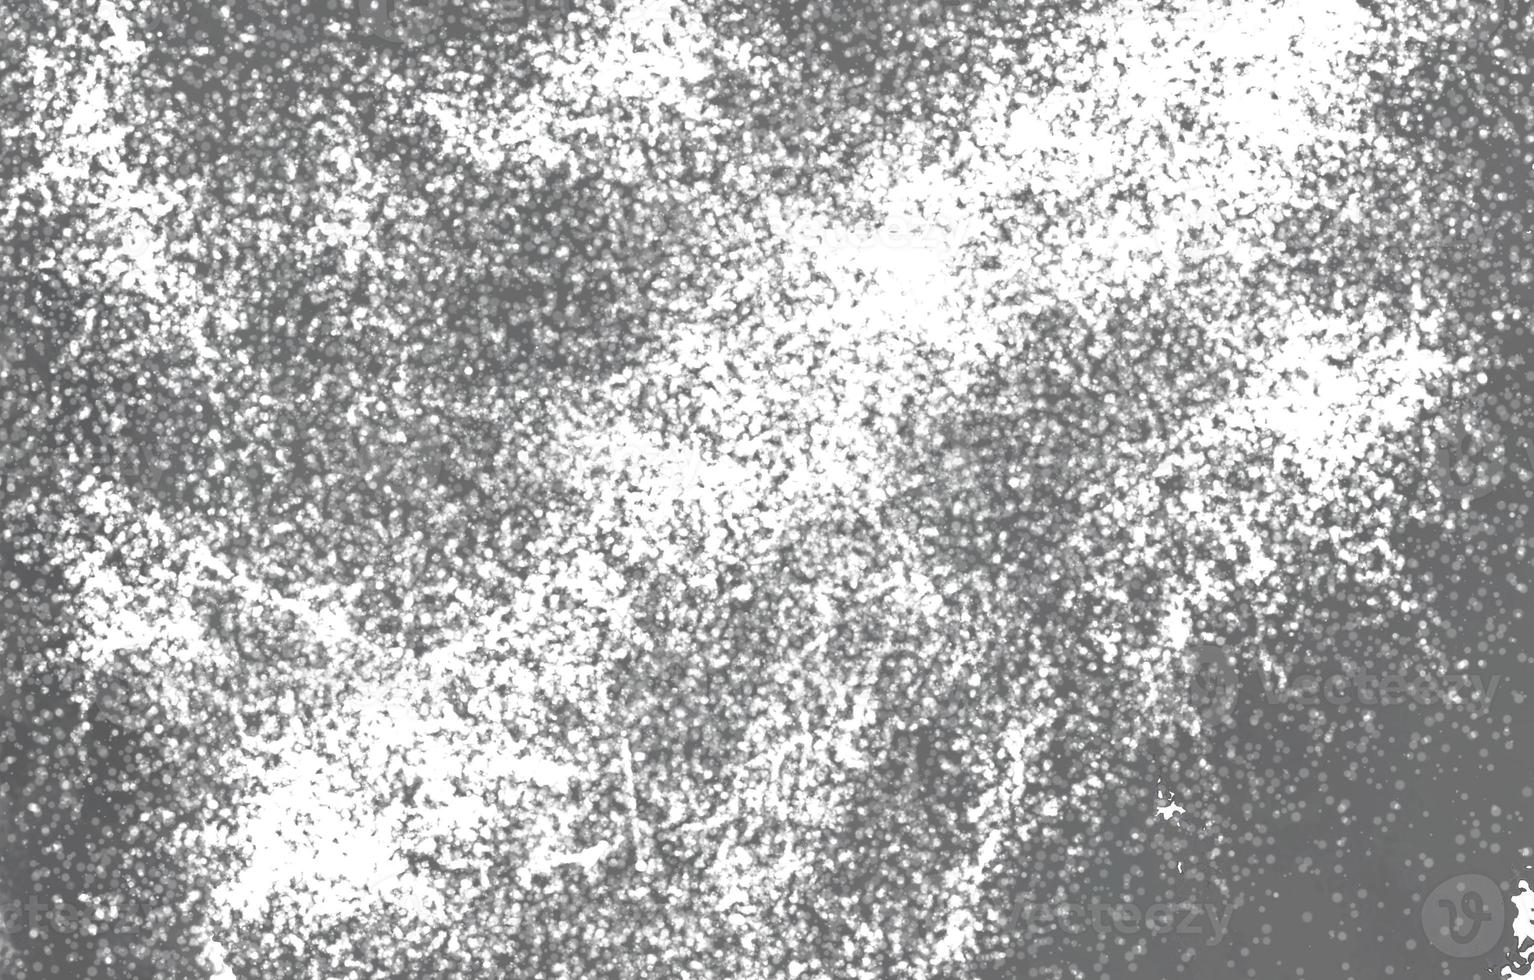 poussière et arrière-plans texturés rayés. fond de mur blanc et noir grunge. arrière-plan de détresse de superposition de poussière désordonnée sombre. facile à créer abstrait pointillé, rayé photo